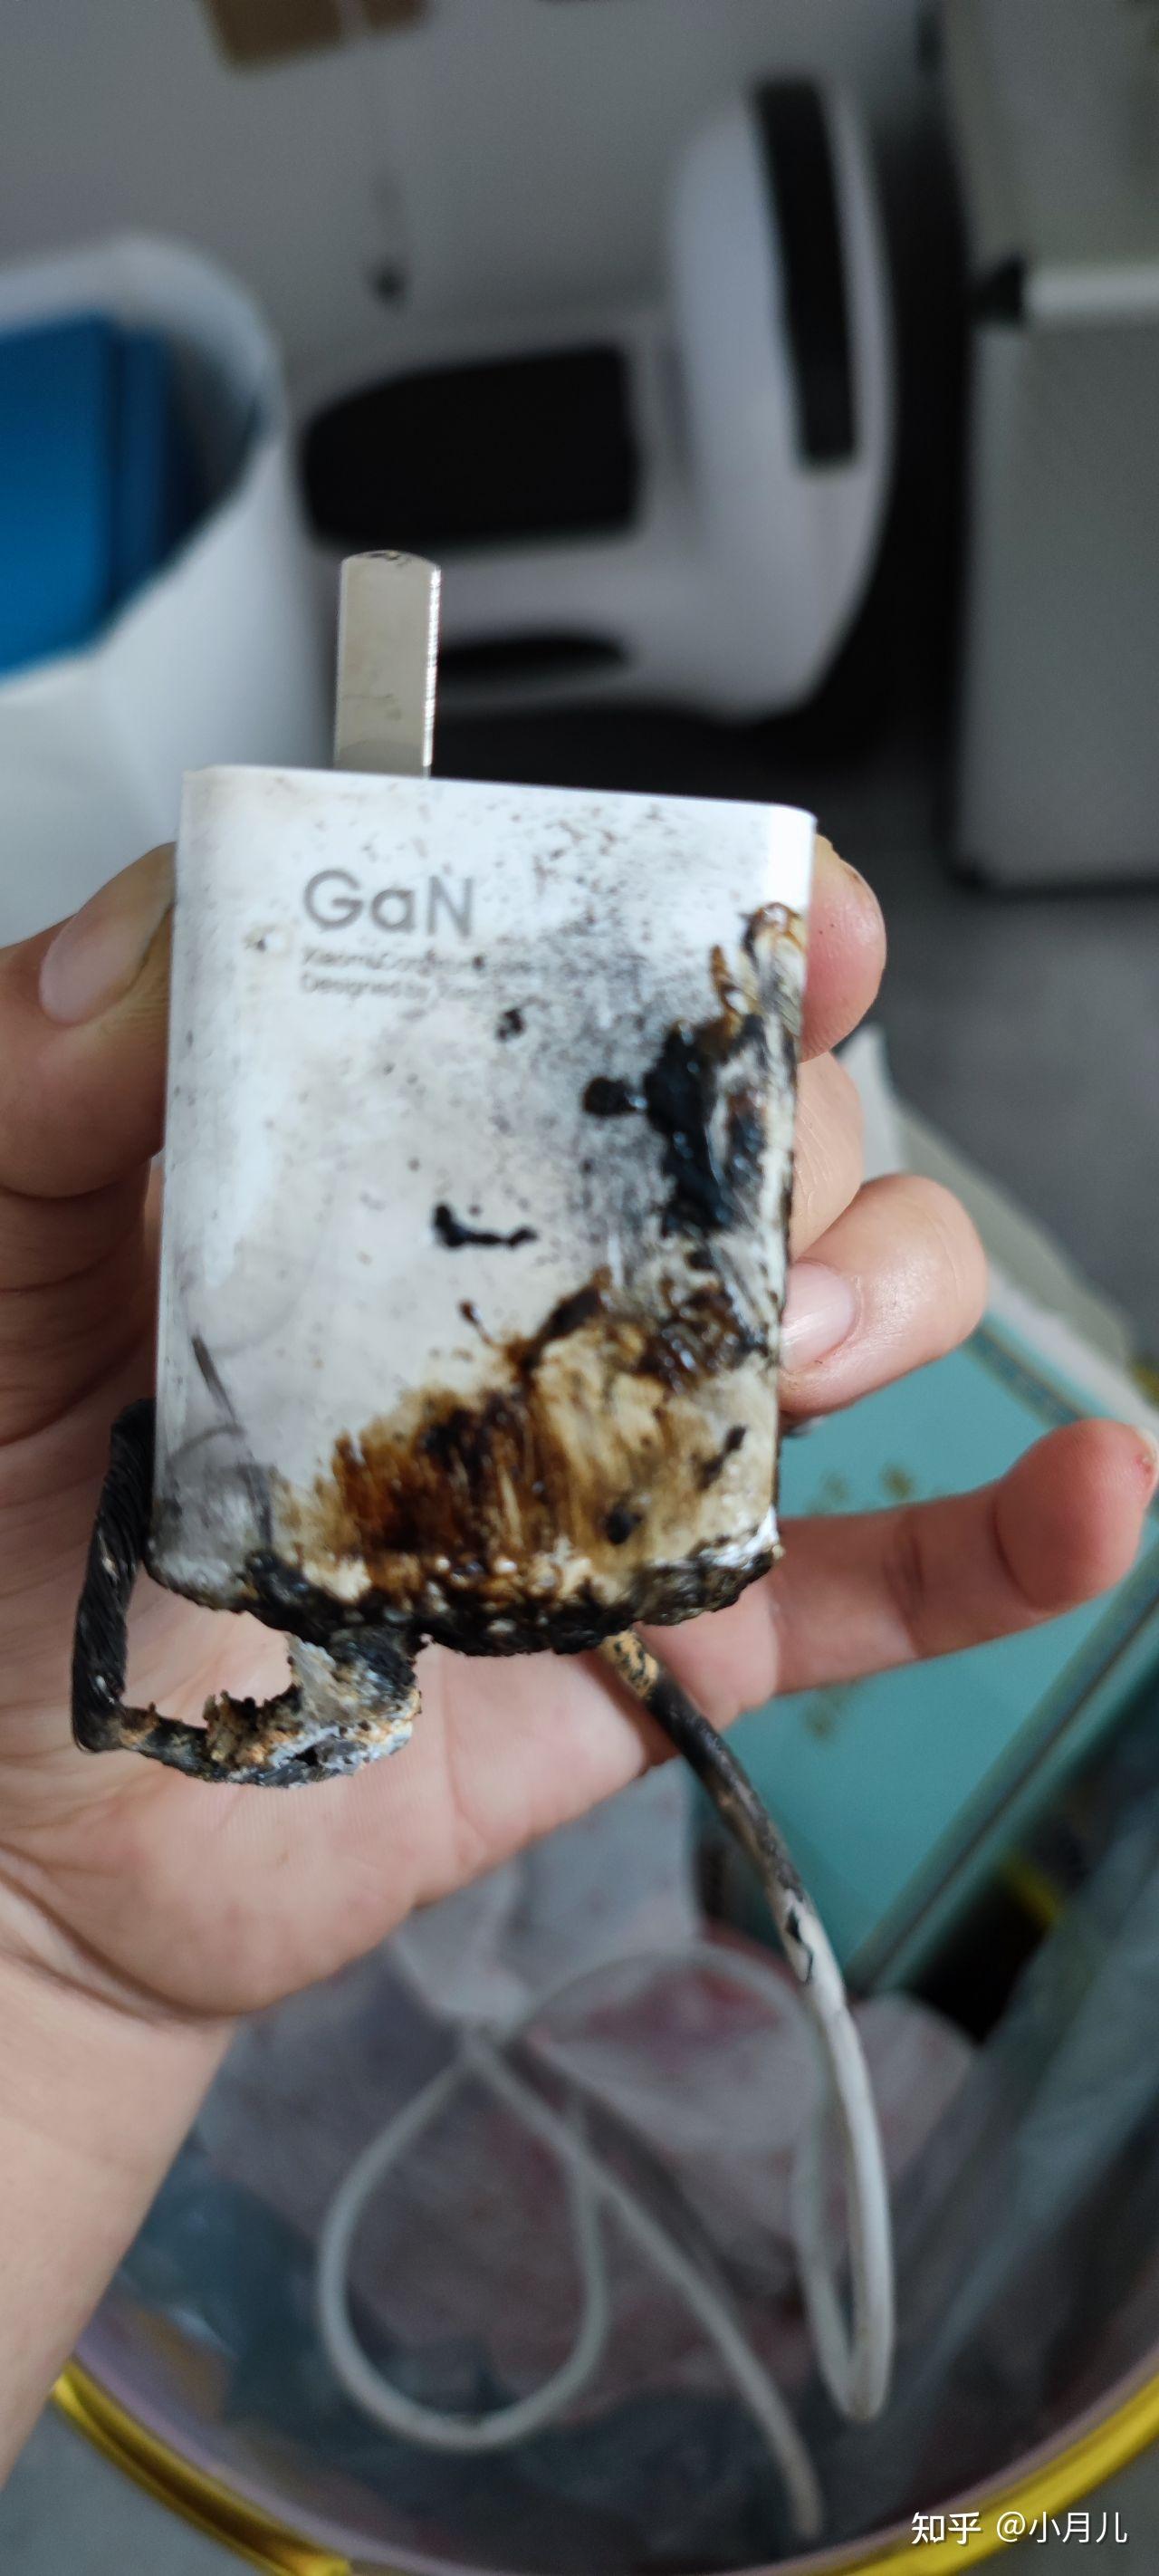 6月15号在长春买的小米11手机,7月3号手机充电器爆炸着火了,我家的床